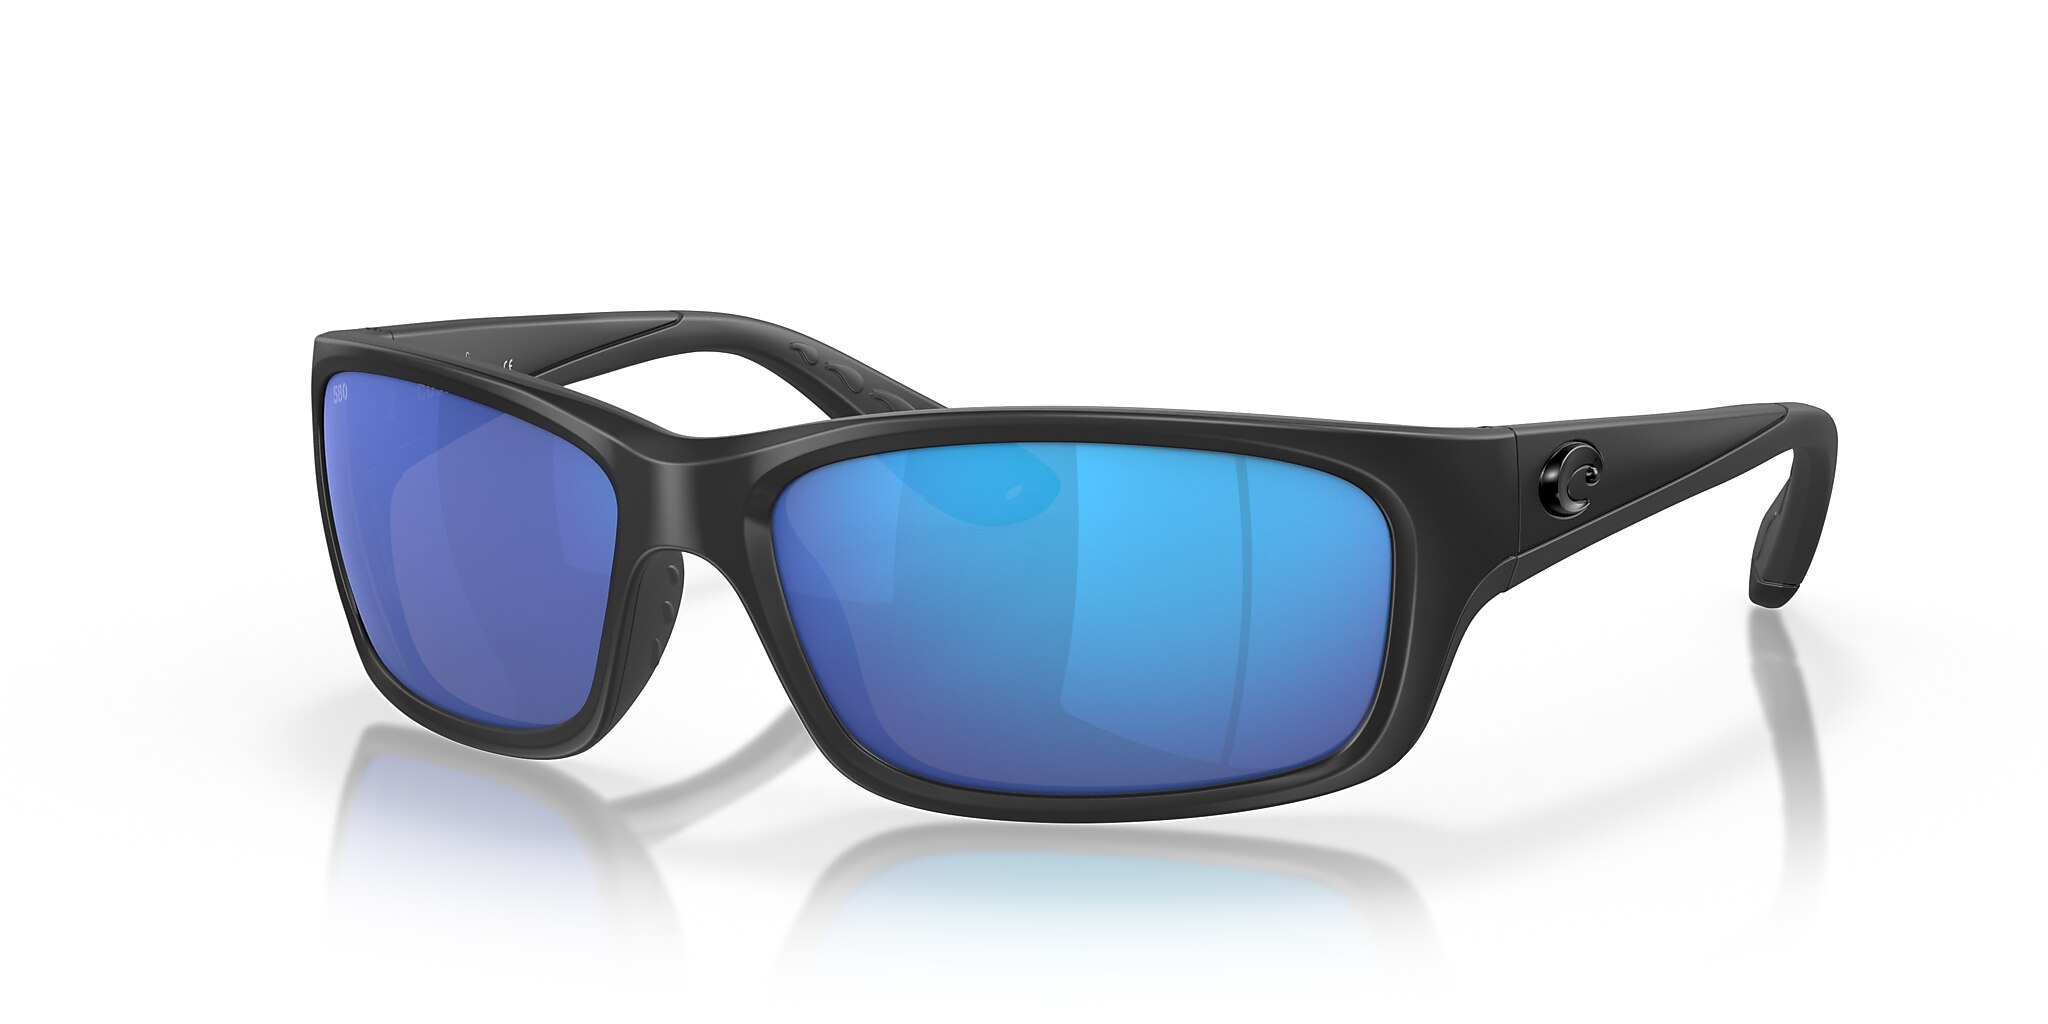 Jose Polarized Sunglasses in Blue Mirror | Costa Del Mar®